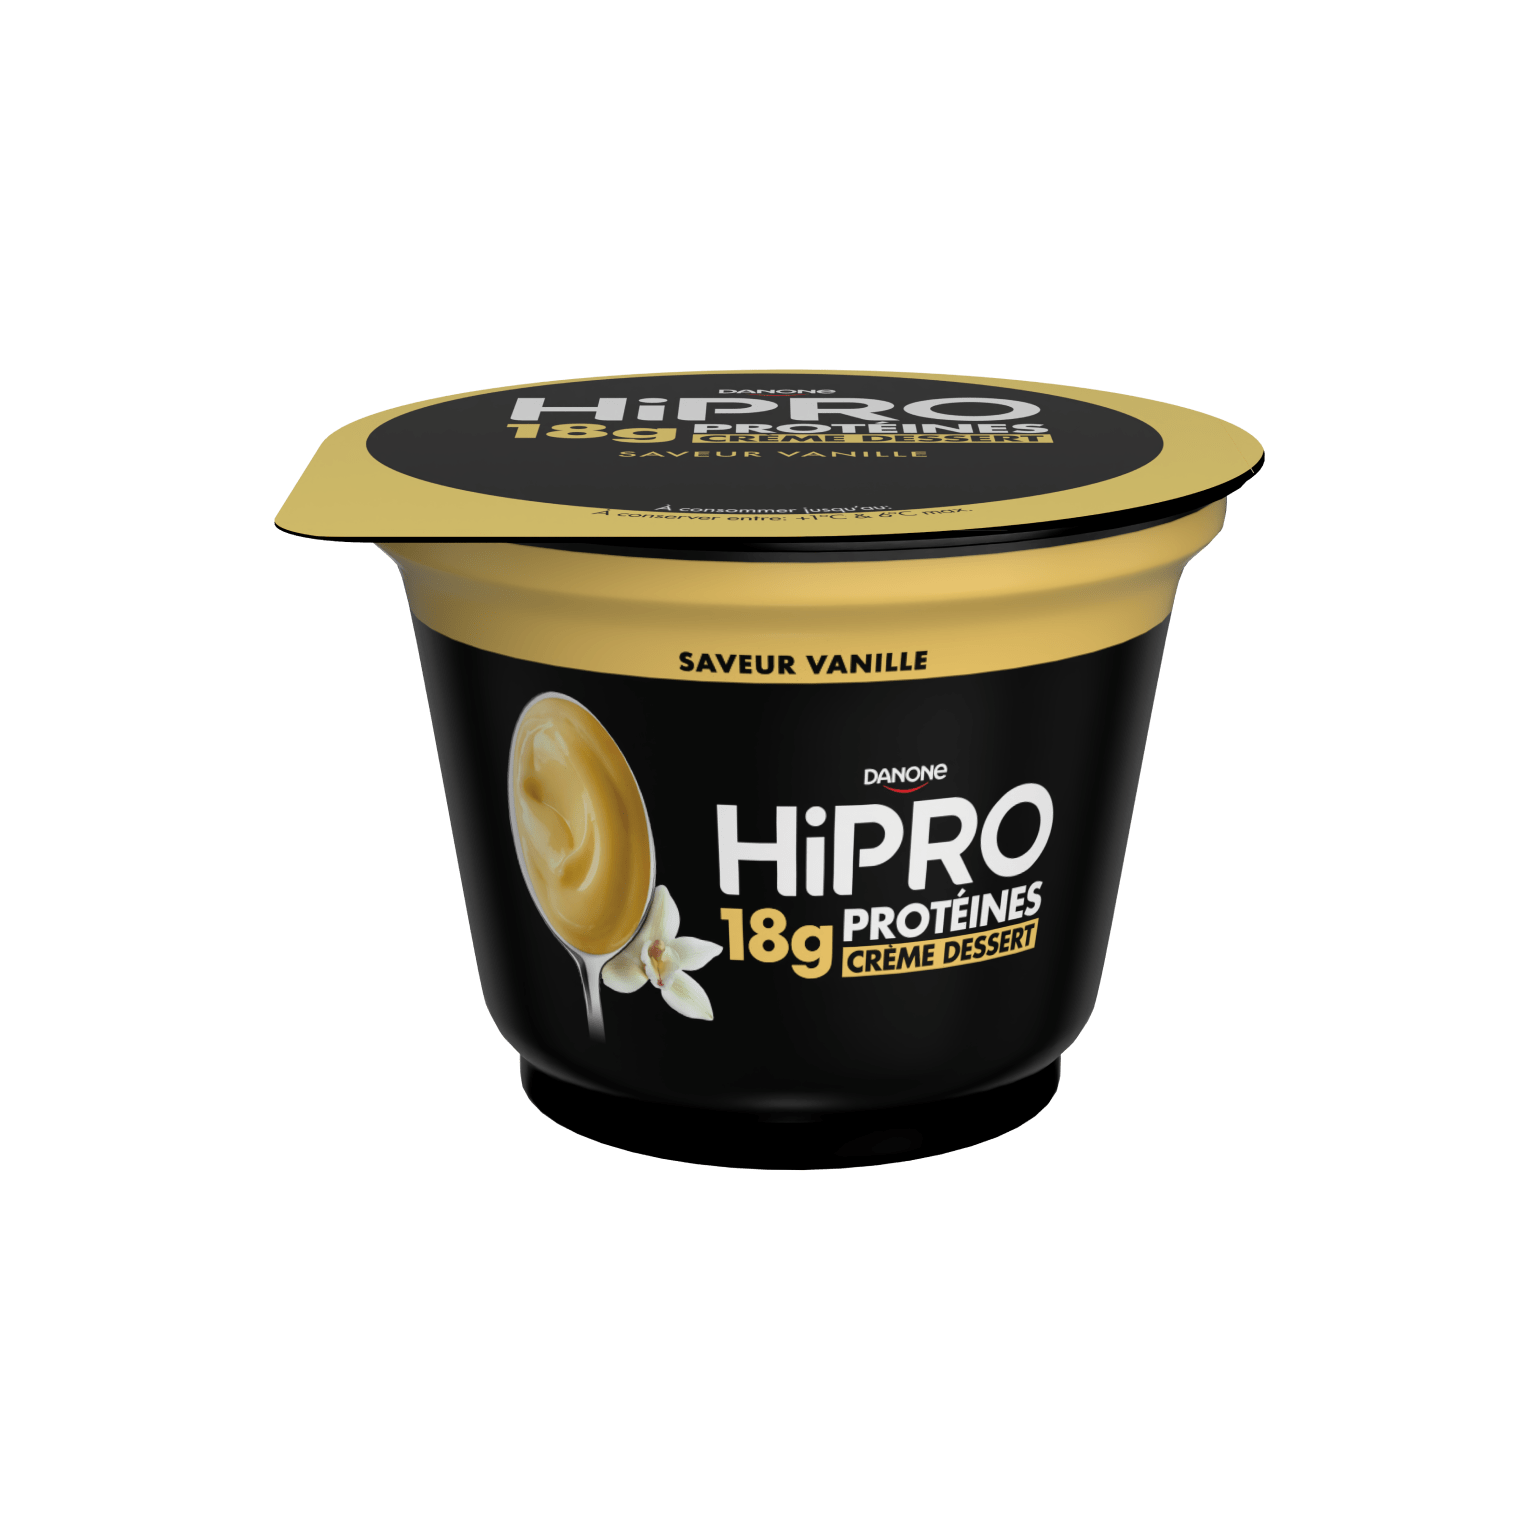 Fais-toi plaisir avec la nouvelle crème dessert HiPRO faible en matières grasses. C’est 18g de protéines pour tes muscles !